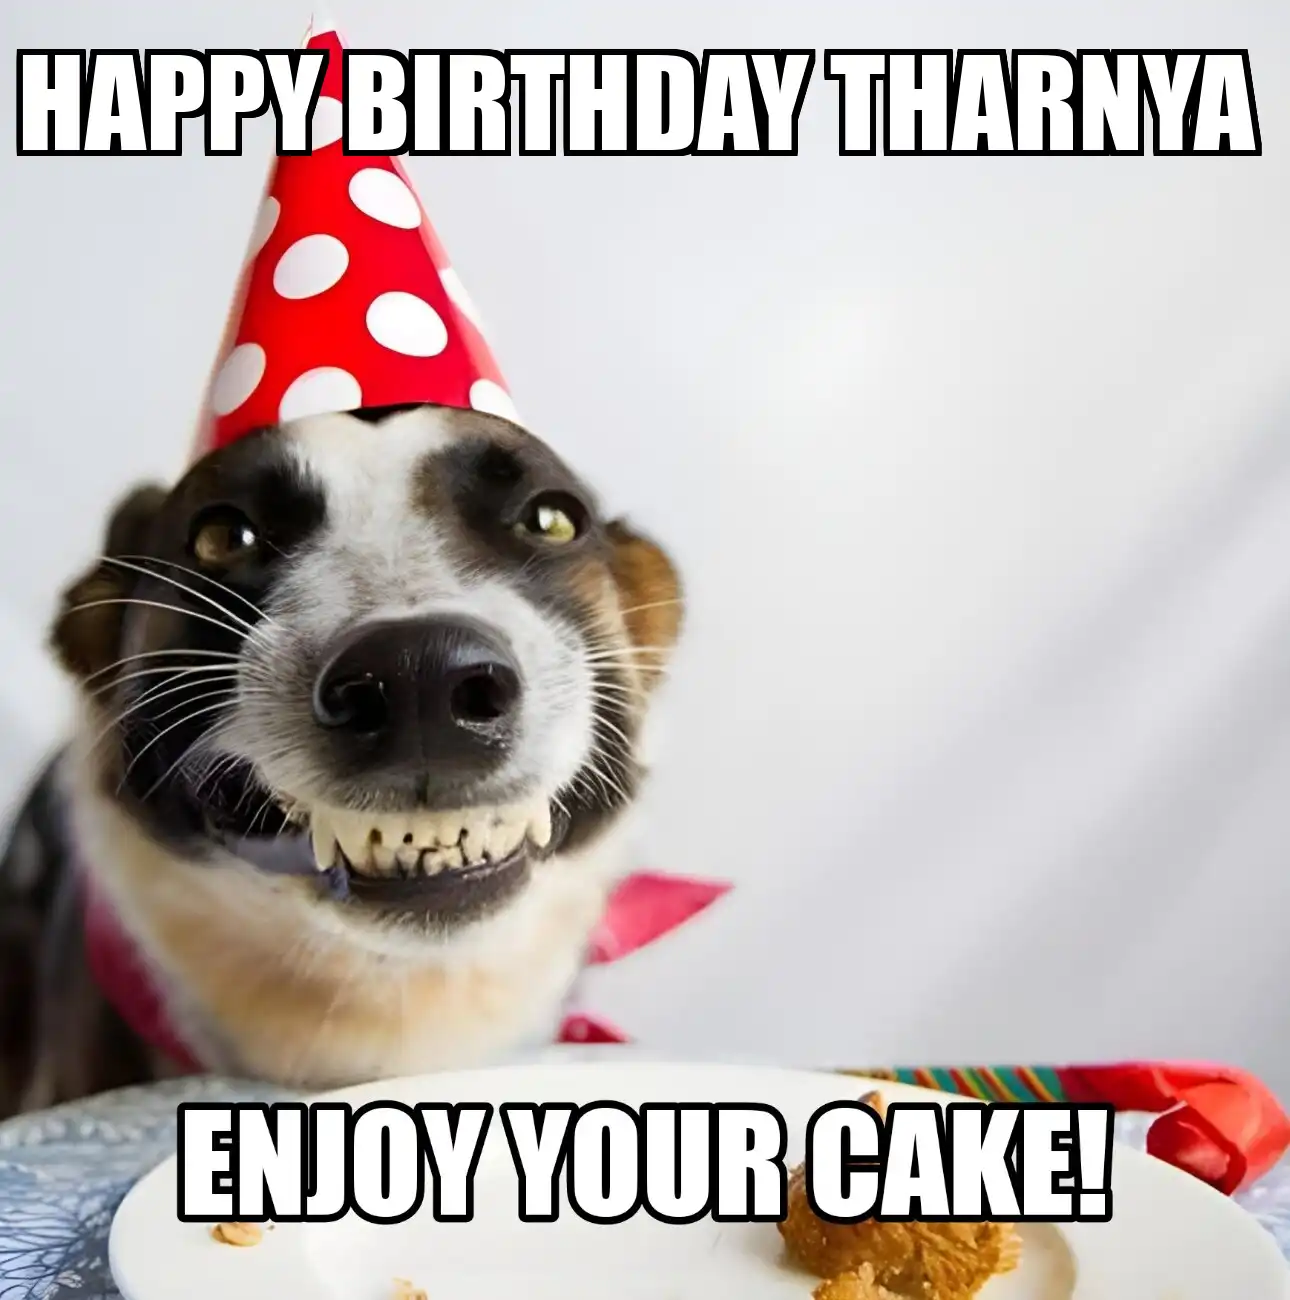 Happy Birthday Tharnya Enjoy Your Cake Dog Meme